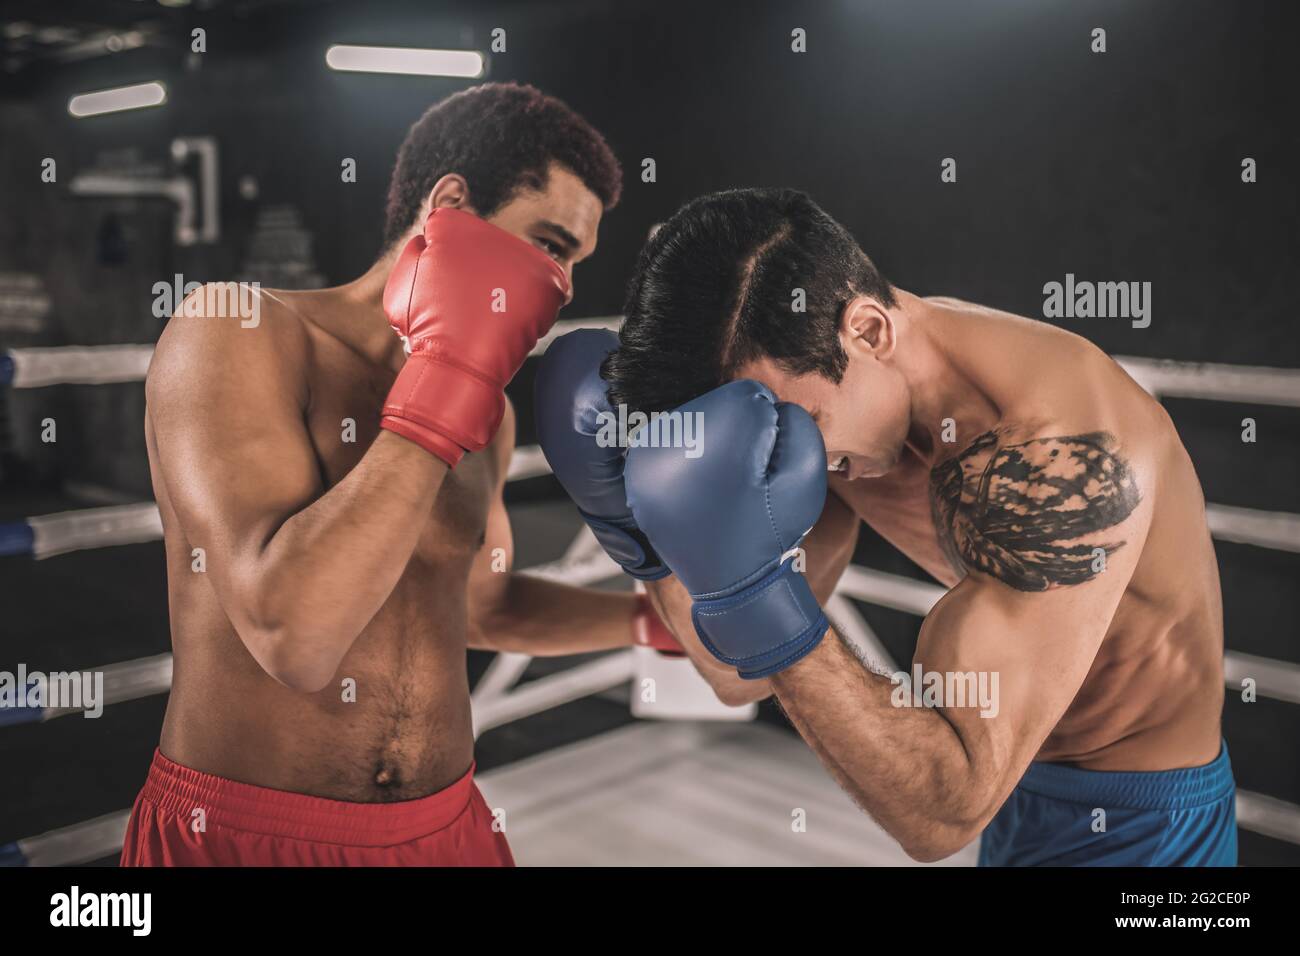 Zwei Kickboxer kämpfen auf einem Boxring und sehen aggressiv aus Stockfoto